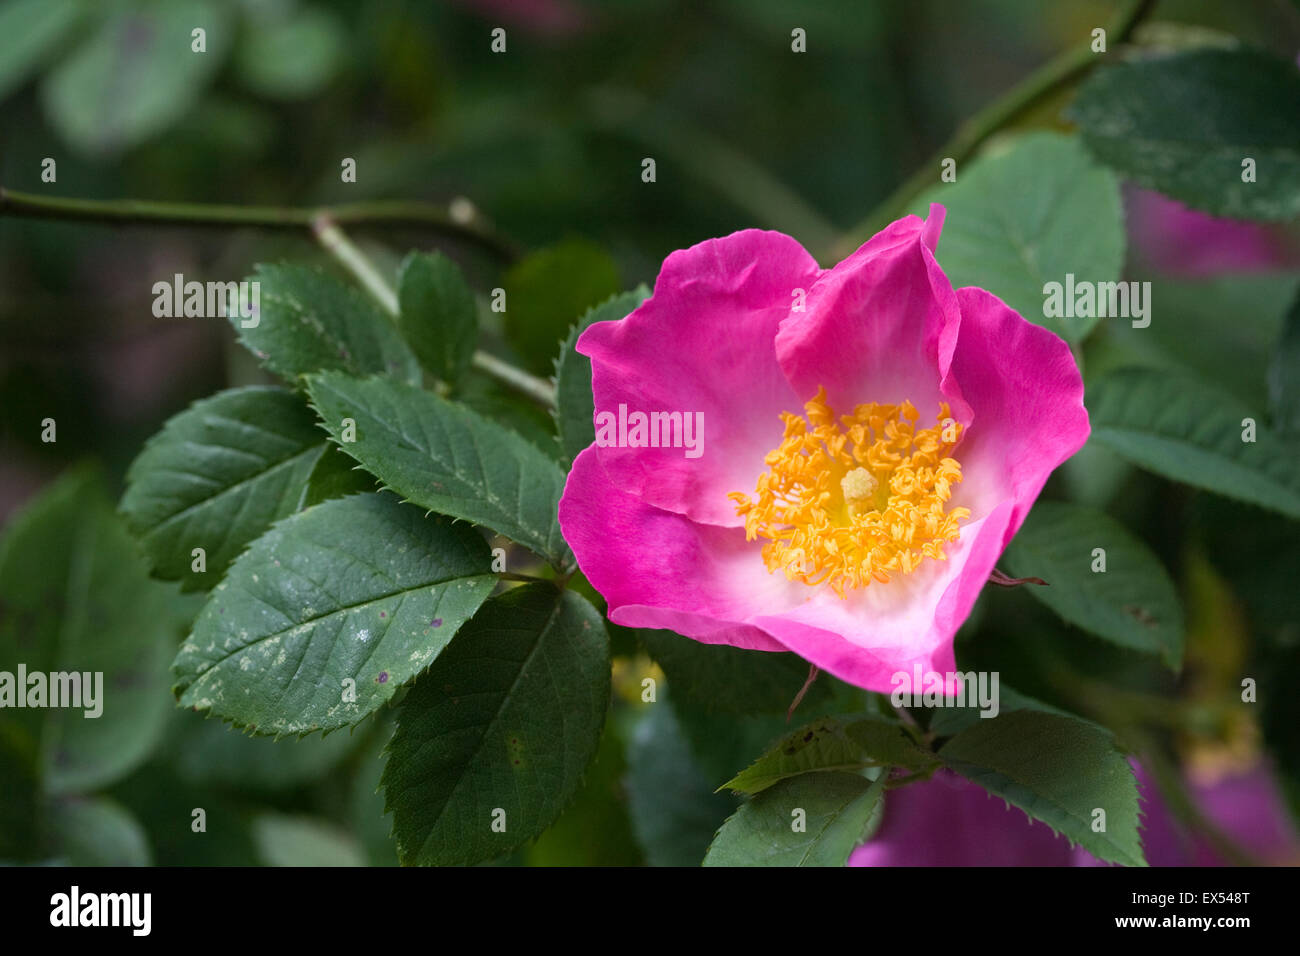 Rosa 'Complicata' flowers in an English garden. Stock Photo